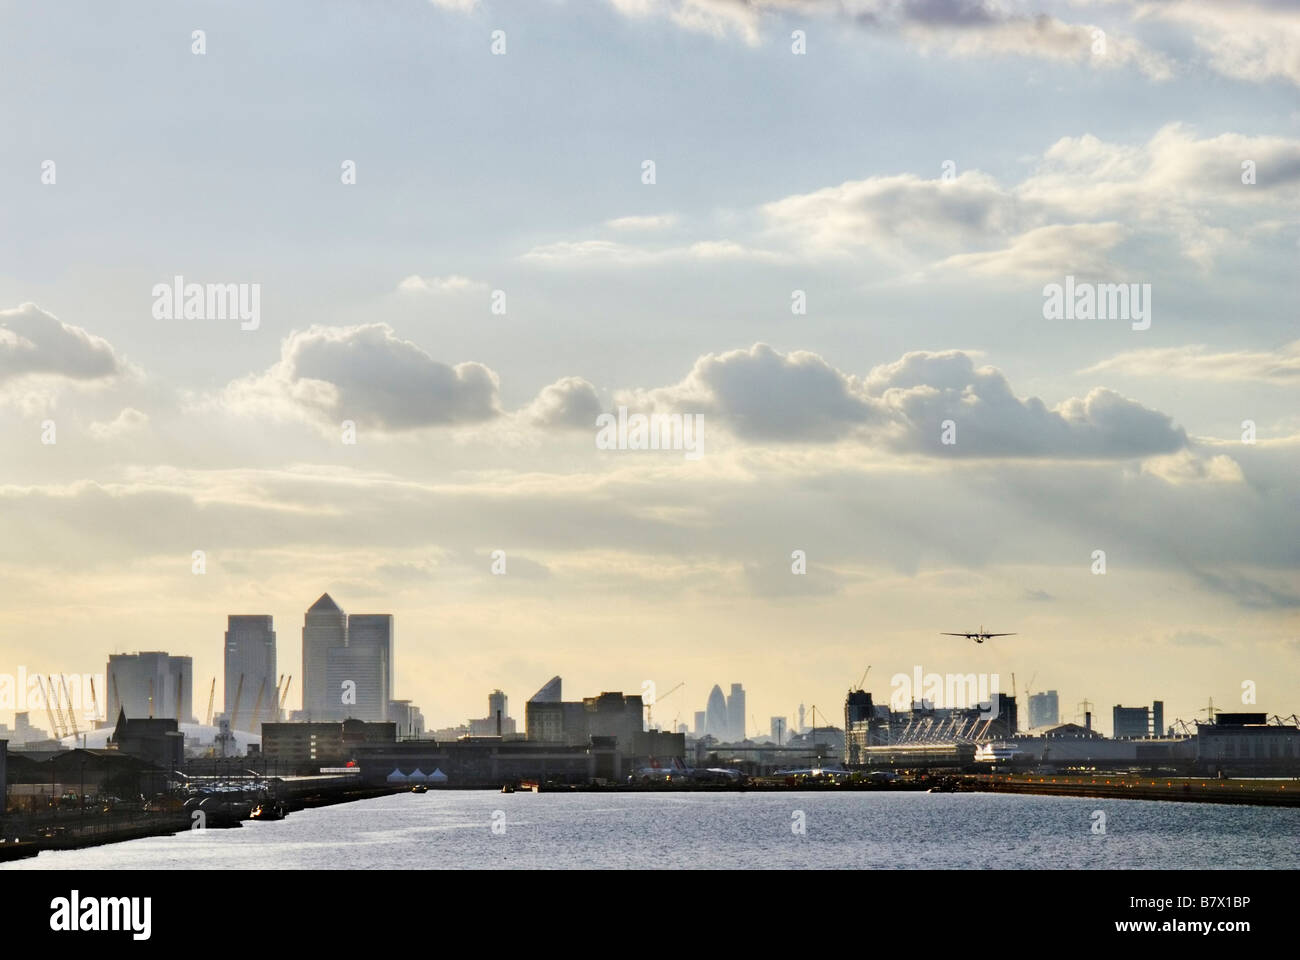 Skyline von London von London City Flughafen Flugzeug ausziehen aus der rechts neben dem Bild ersichtlich Stockfoto